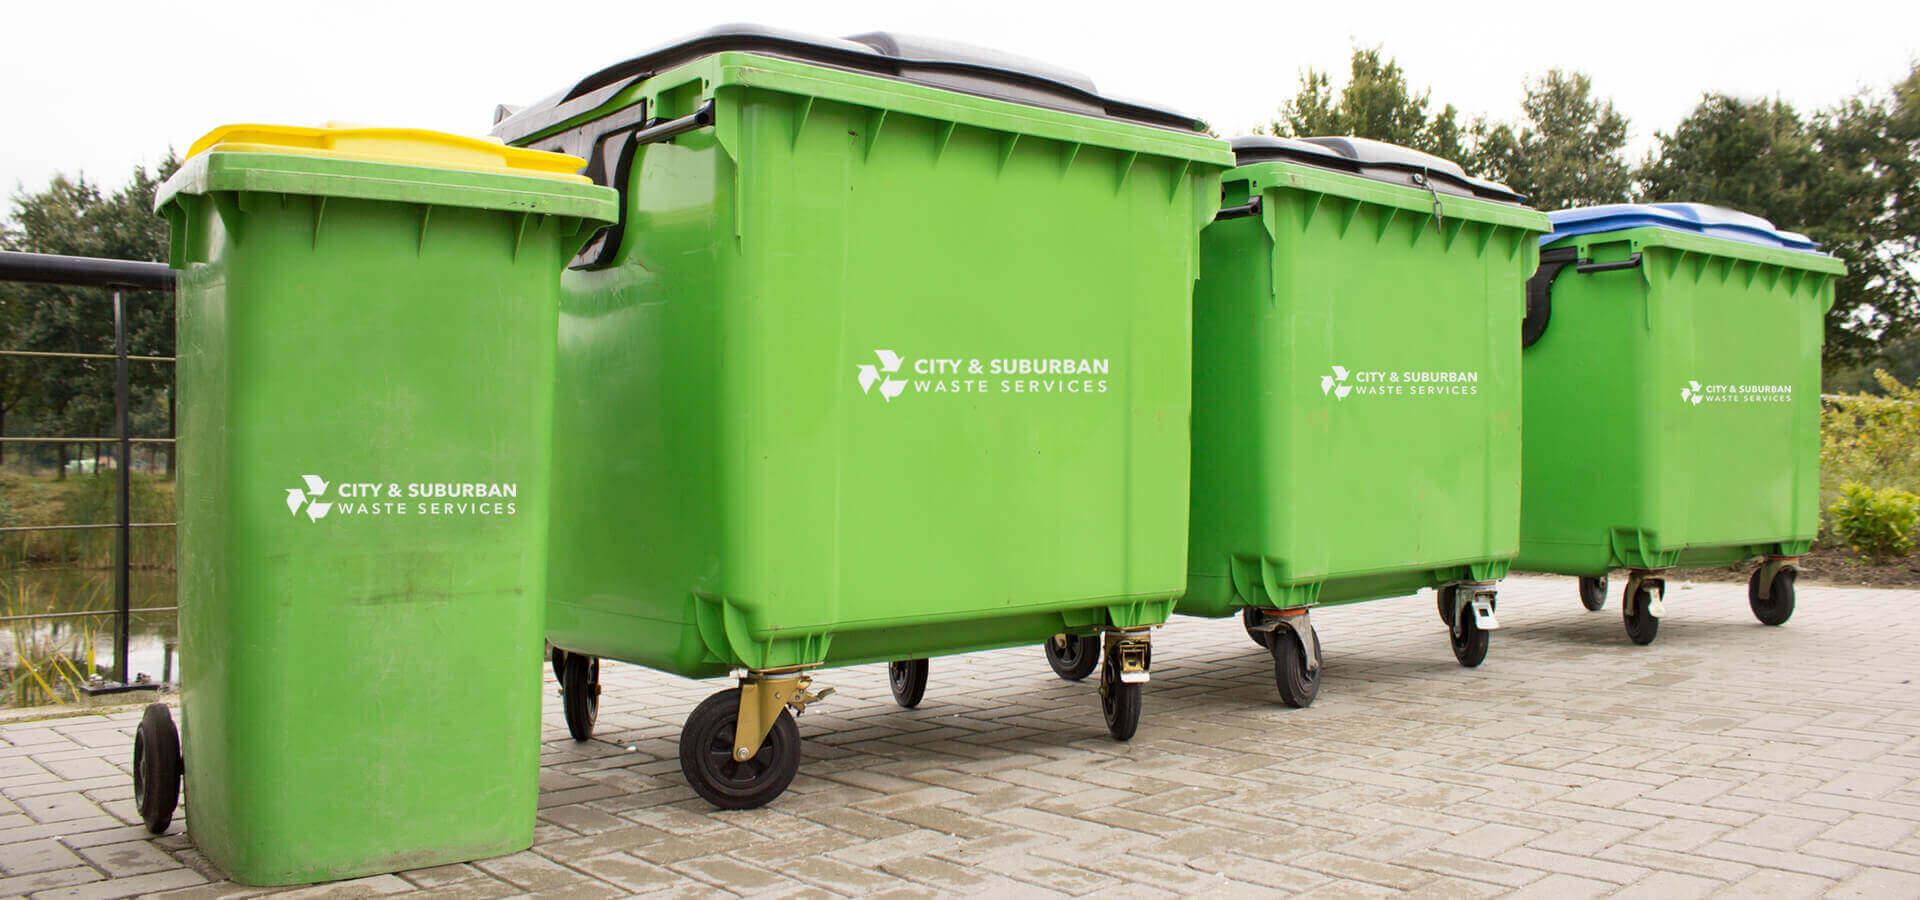 City & Suburban Waste Services Waste Bins Sutton